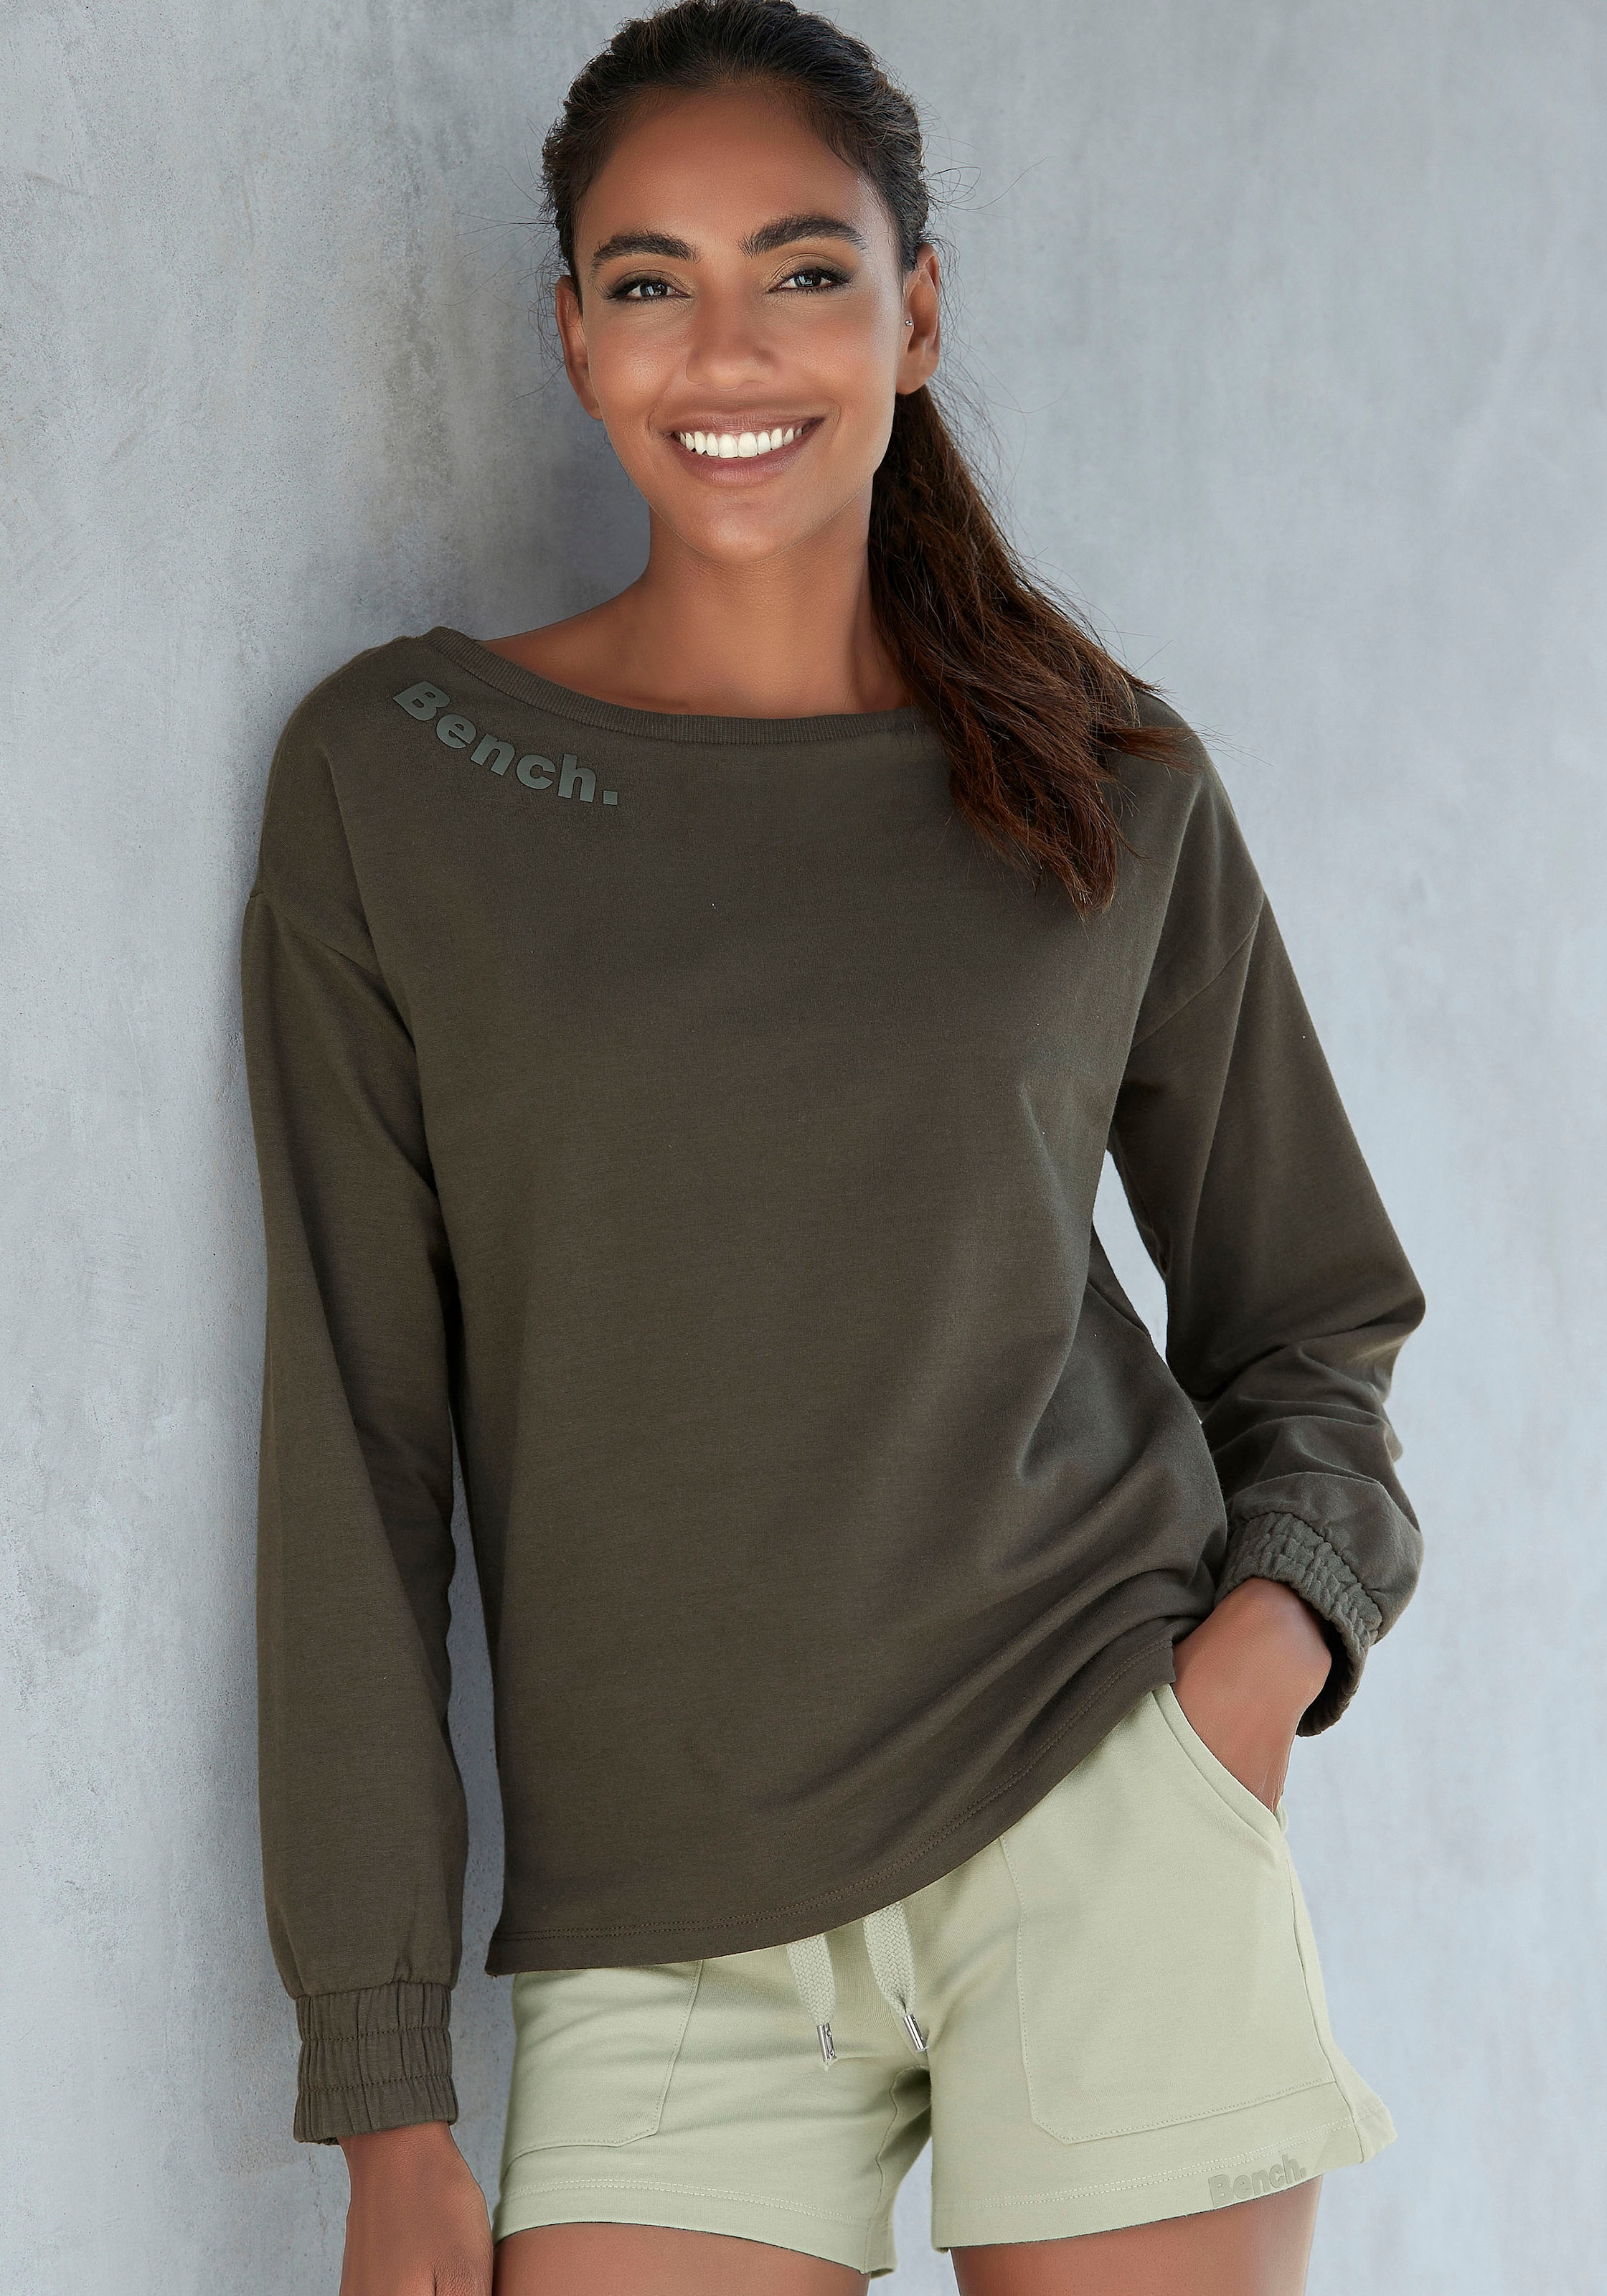 Bench. Loungewear Sweatshirt, mit Loungeanzug kaufen gerafften Ärmelbündchen, online